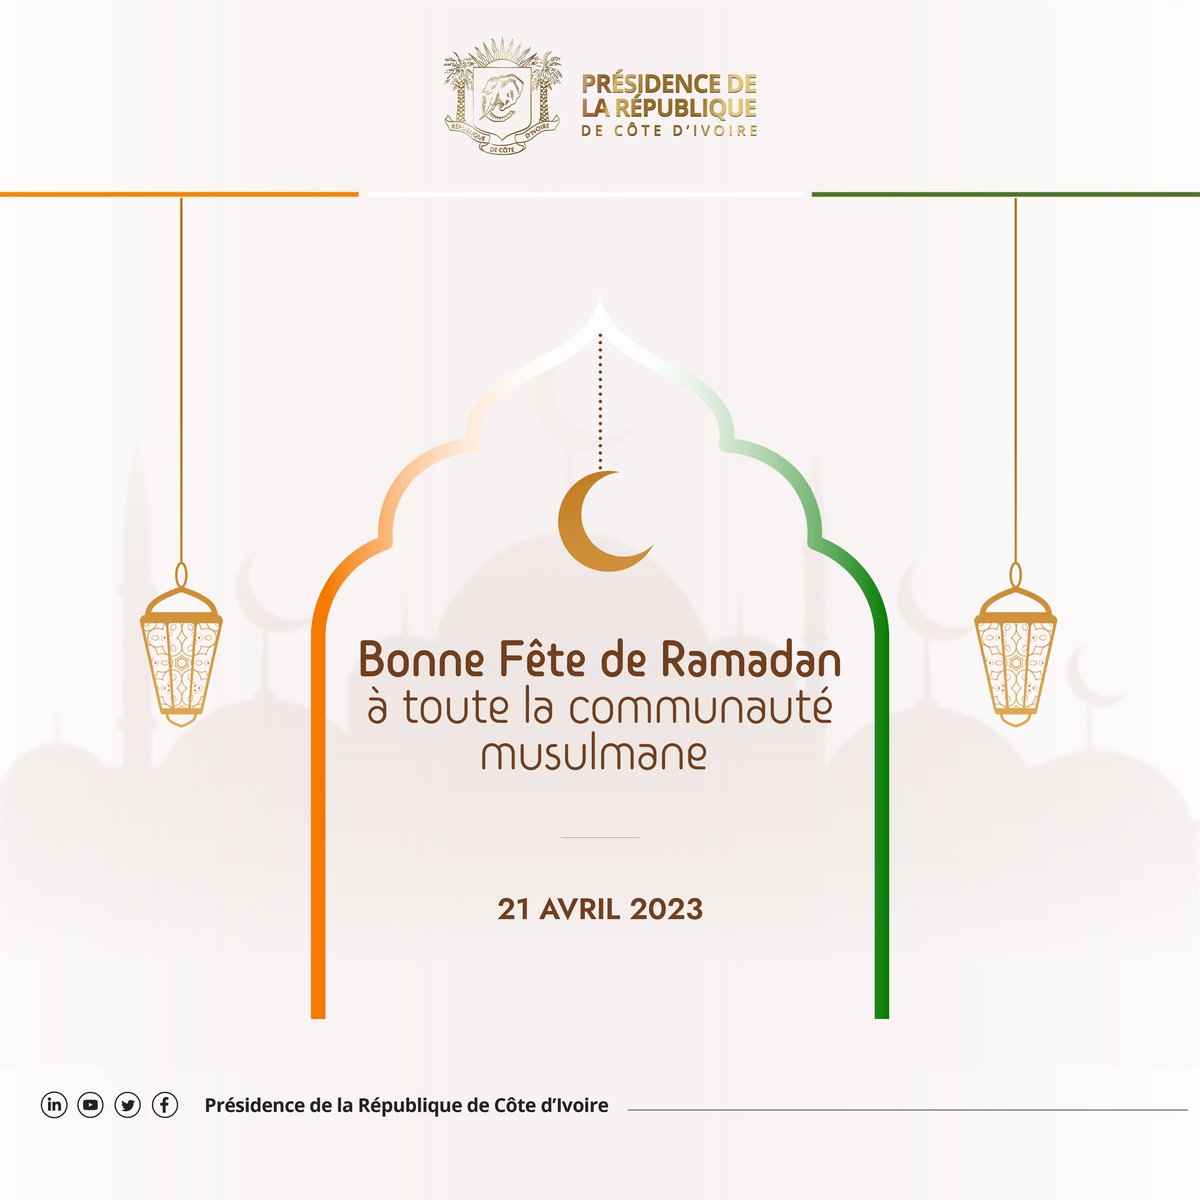 Bonne Fête de Ramadan à toute la communauté musulmane !